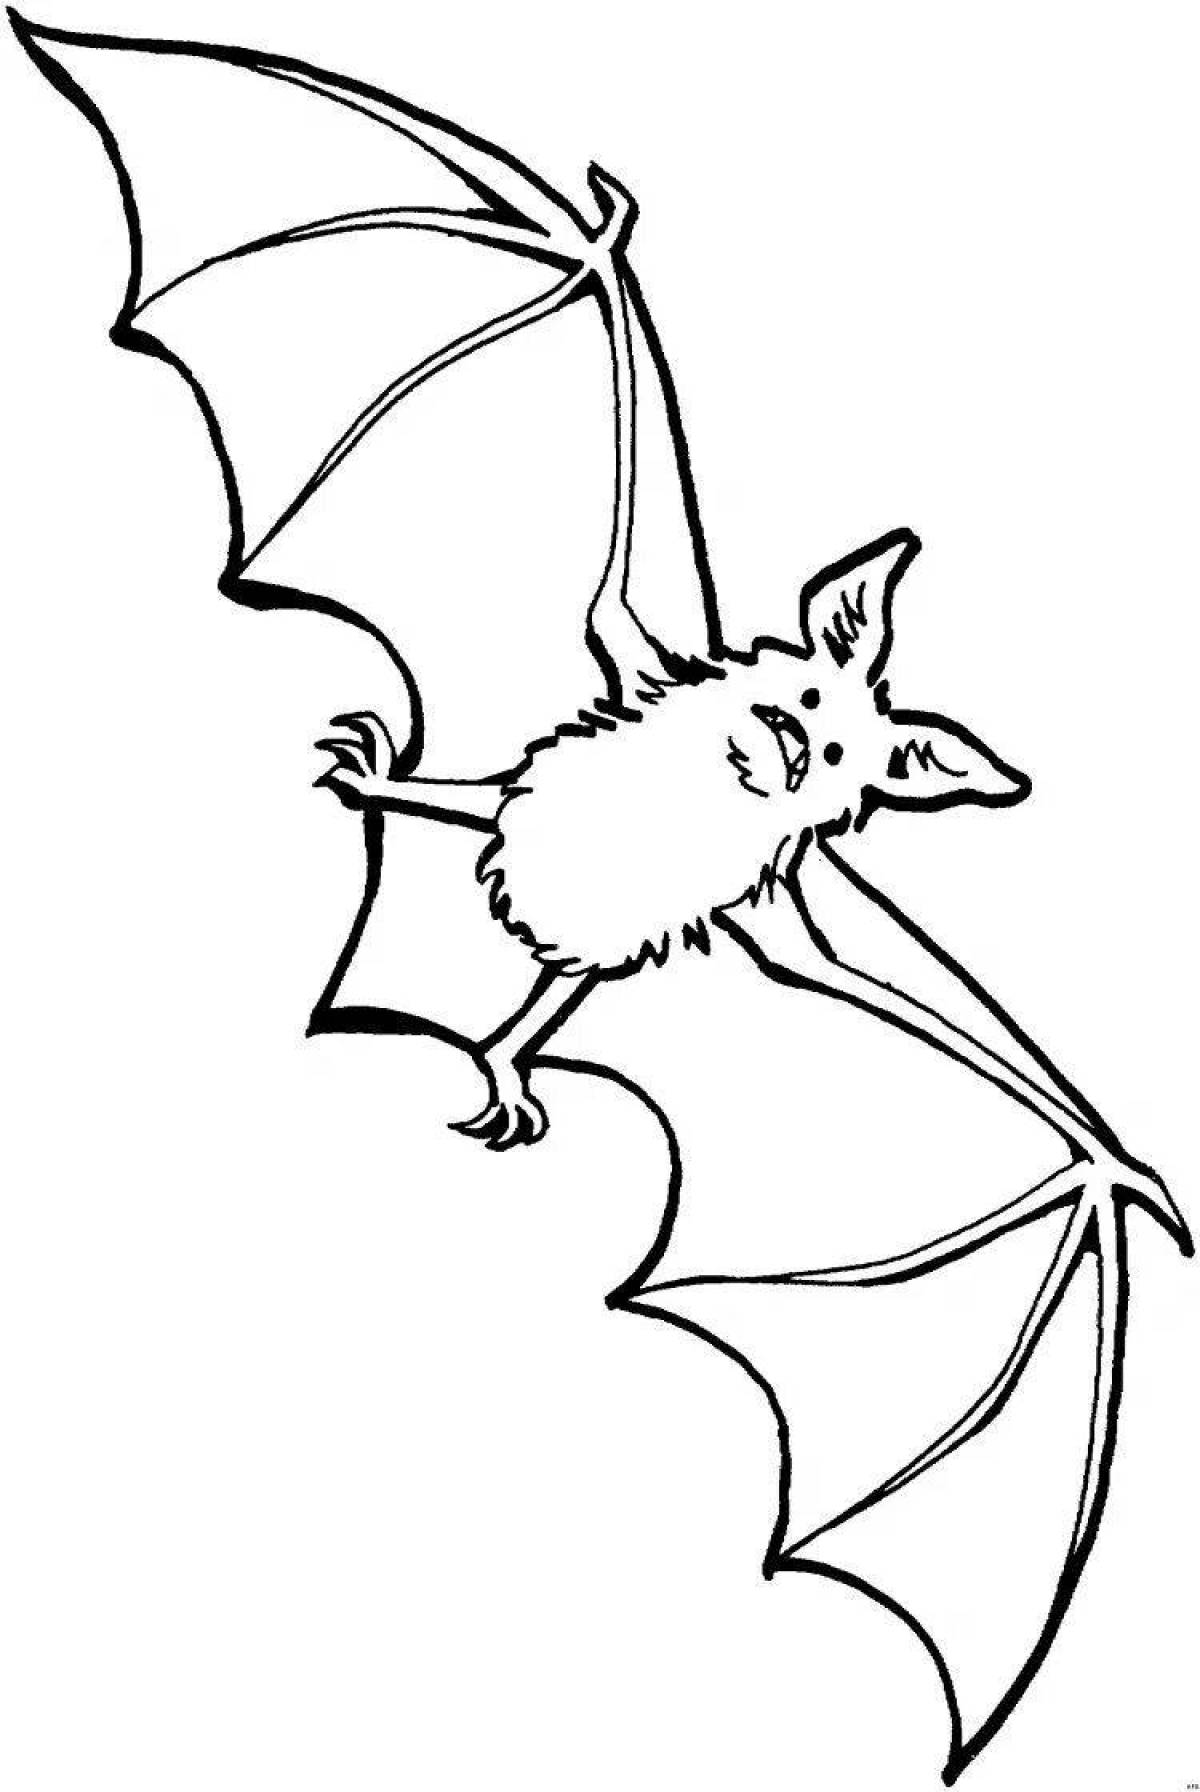 Violent bat coloring page